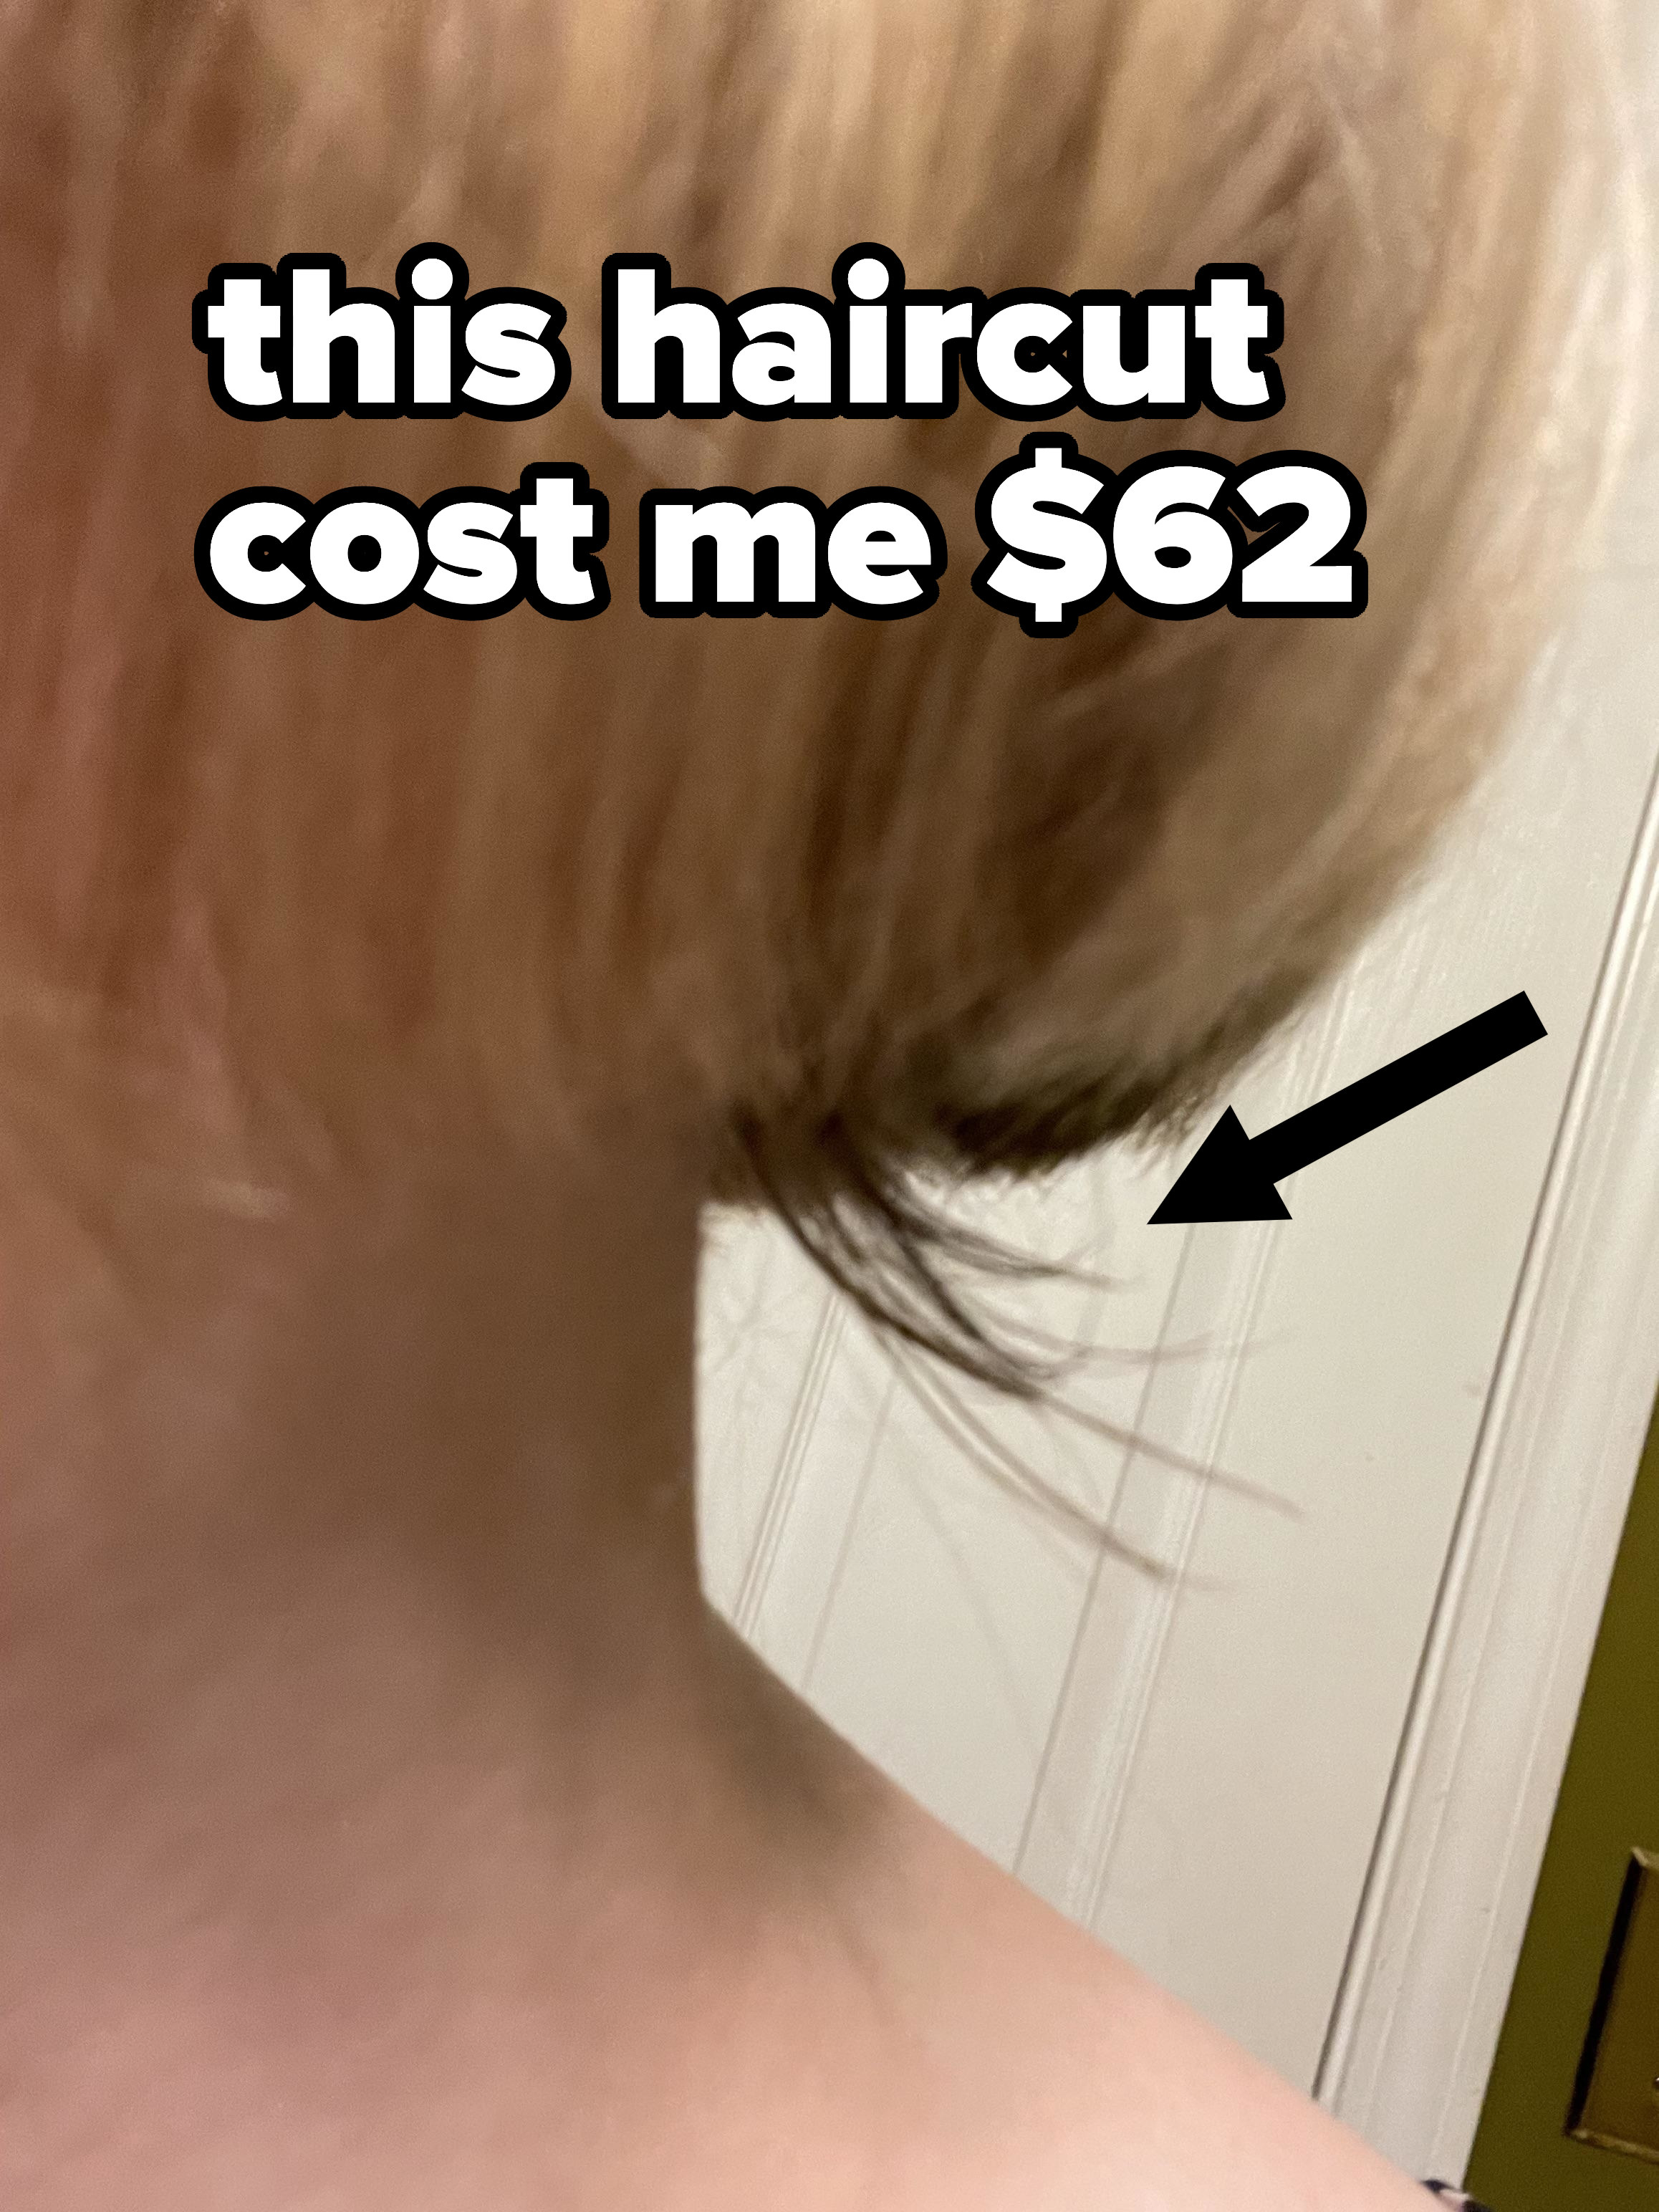 A bad haircut